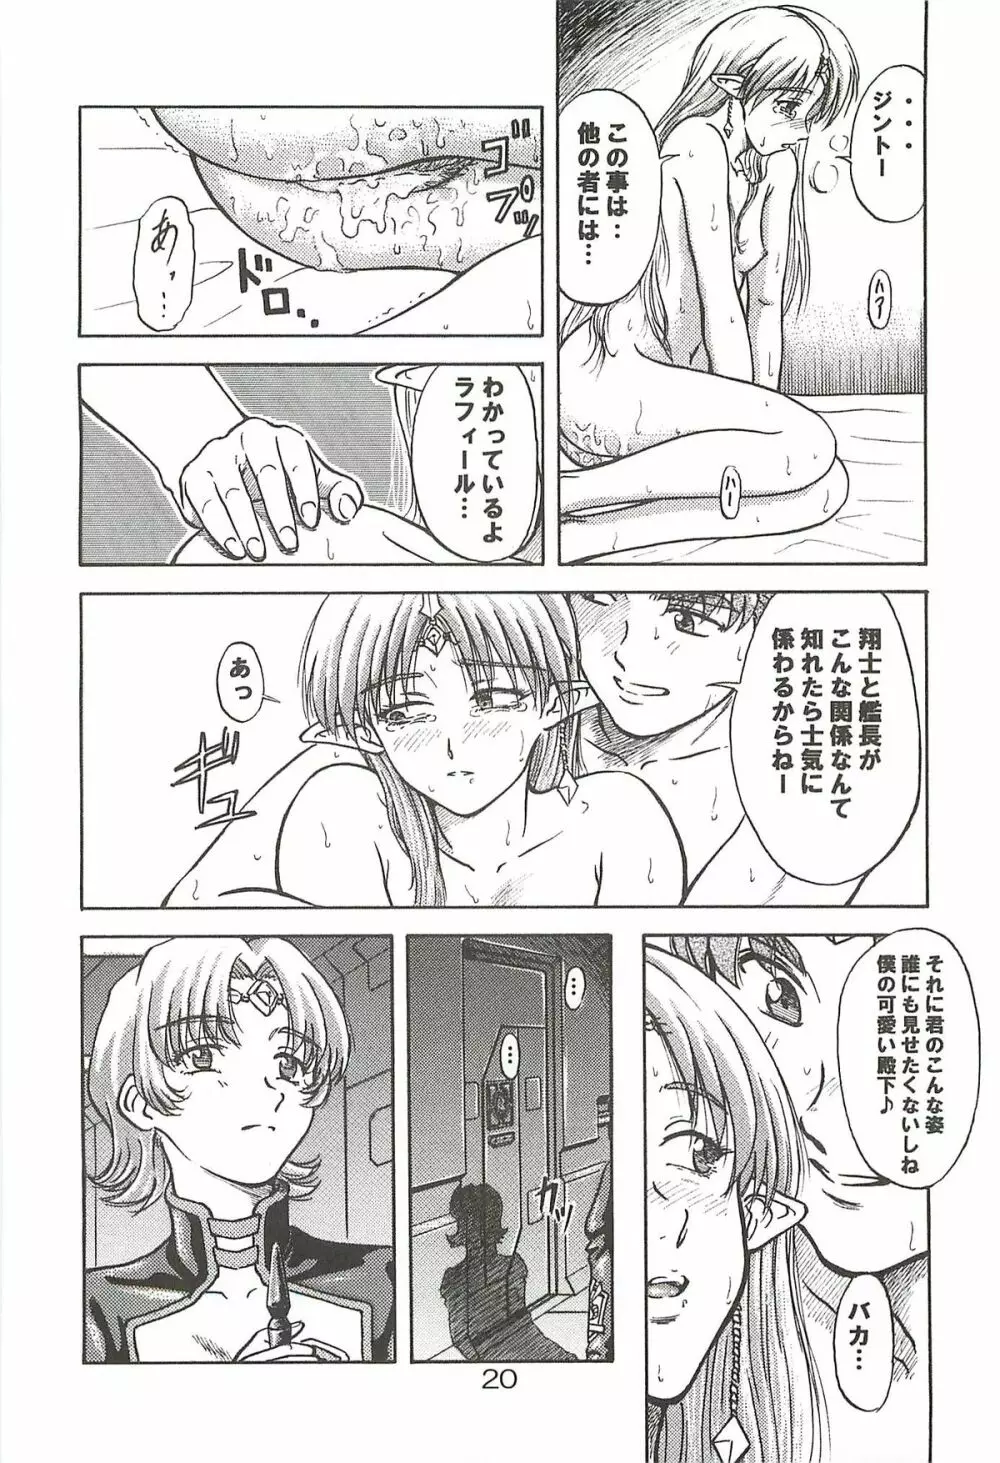 追放覚悟 Special edition Phase1 - page19